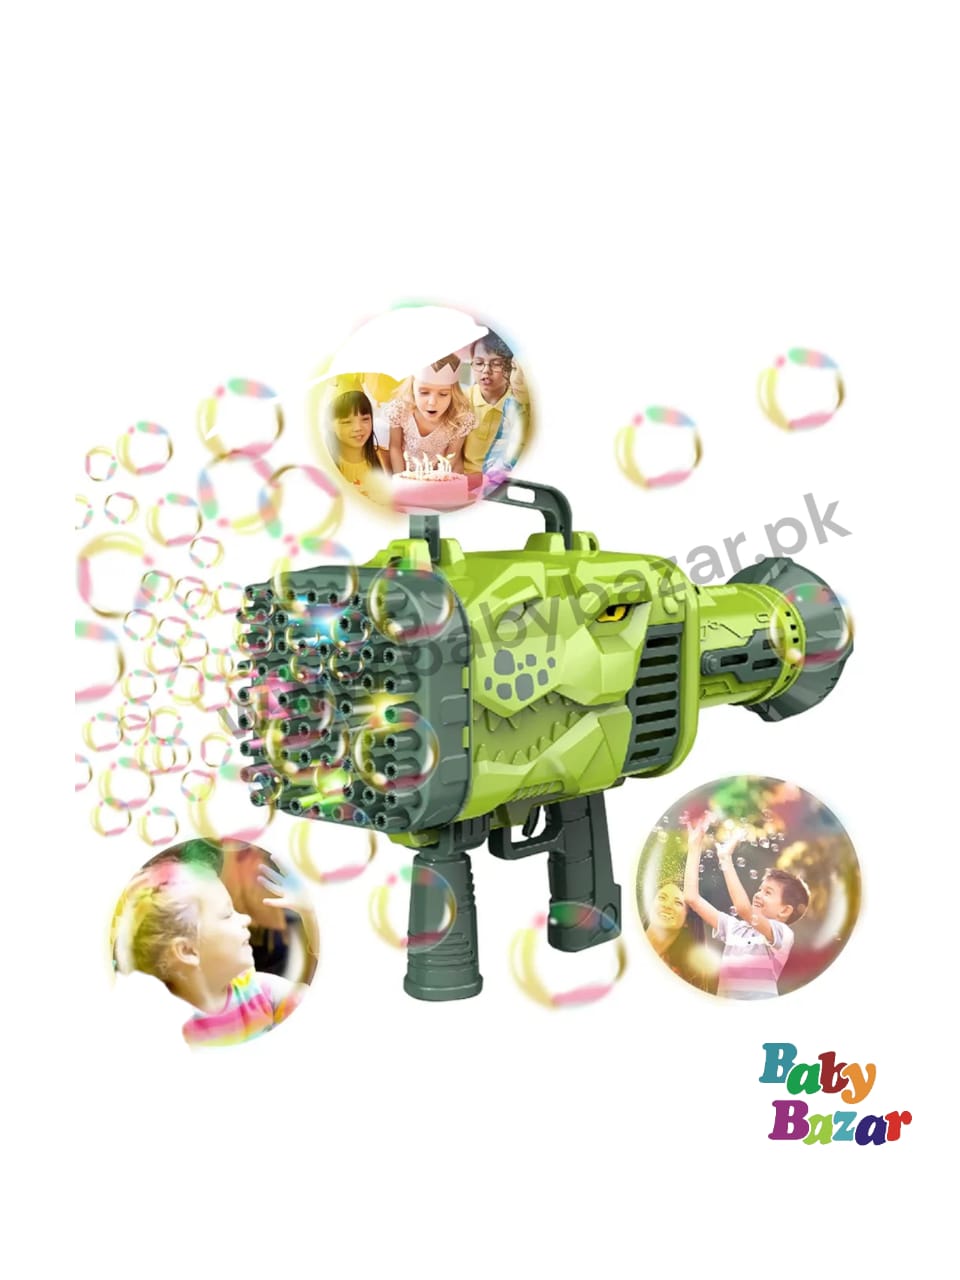 Dinosaur Bubble Gun Machine Toy Makes Bubbles